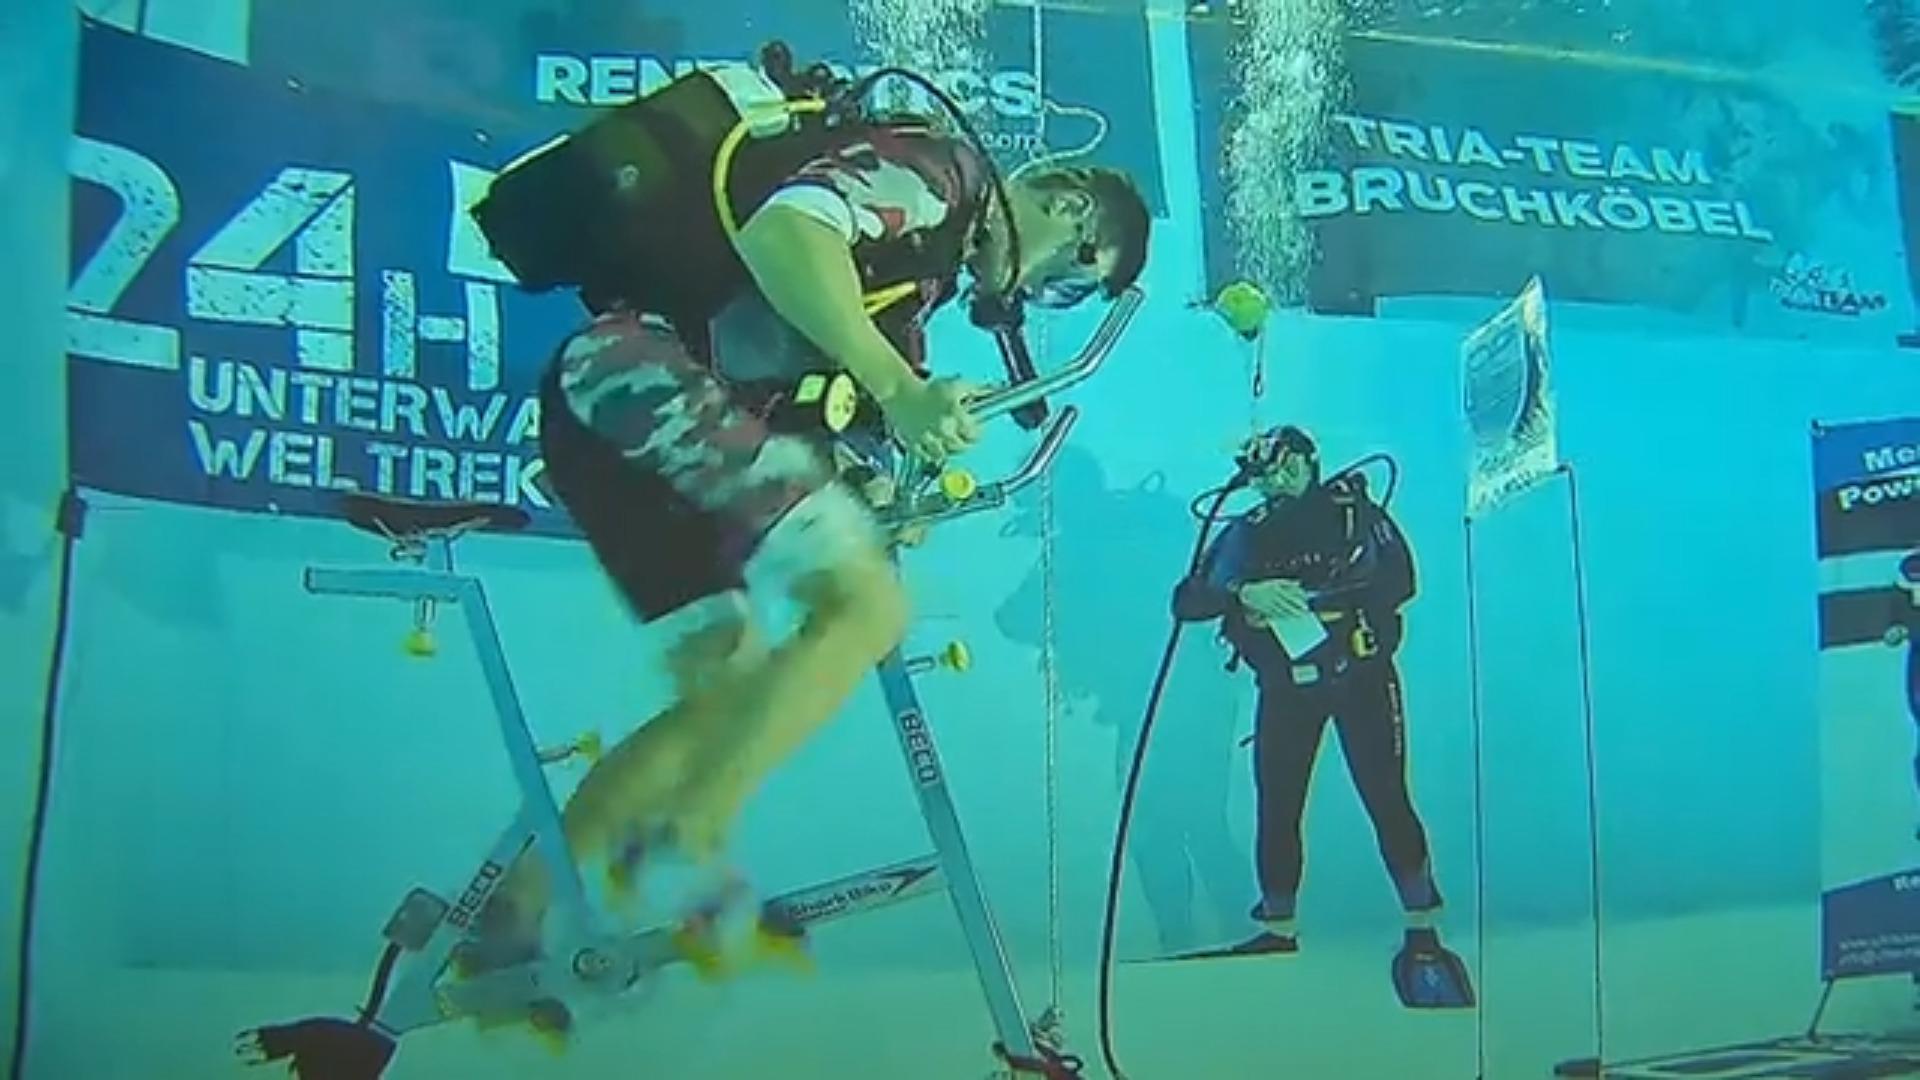 Extremsportler wollen 24 Stunden unter Wasser Fahrrad fahren Abgetaucht & durchgestrampelt